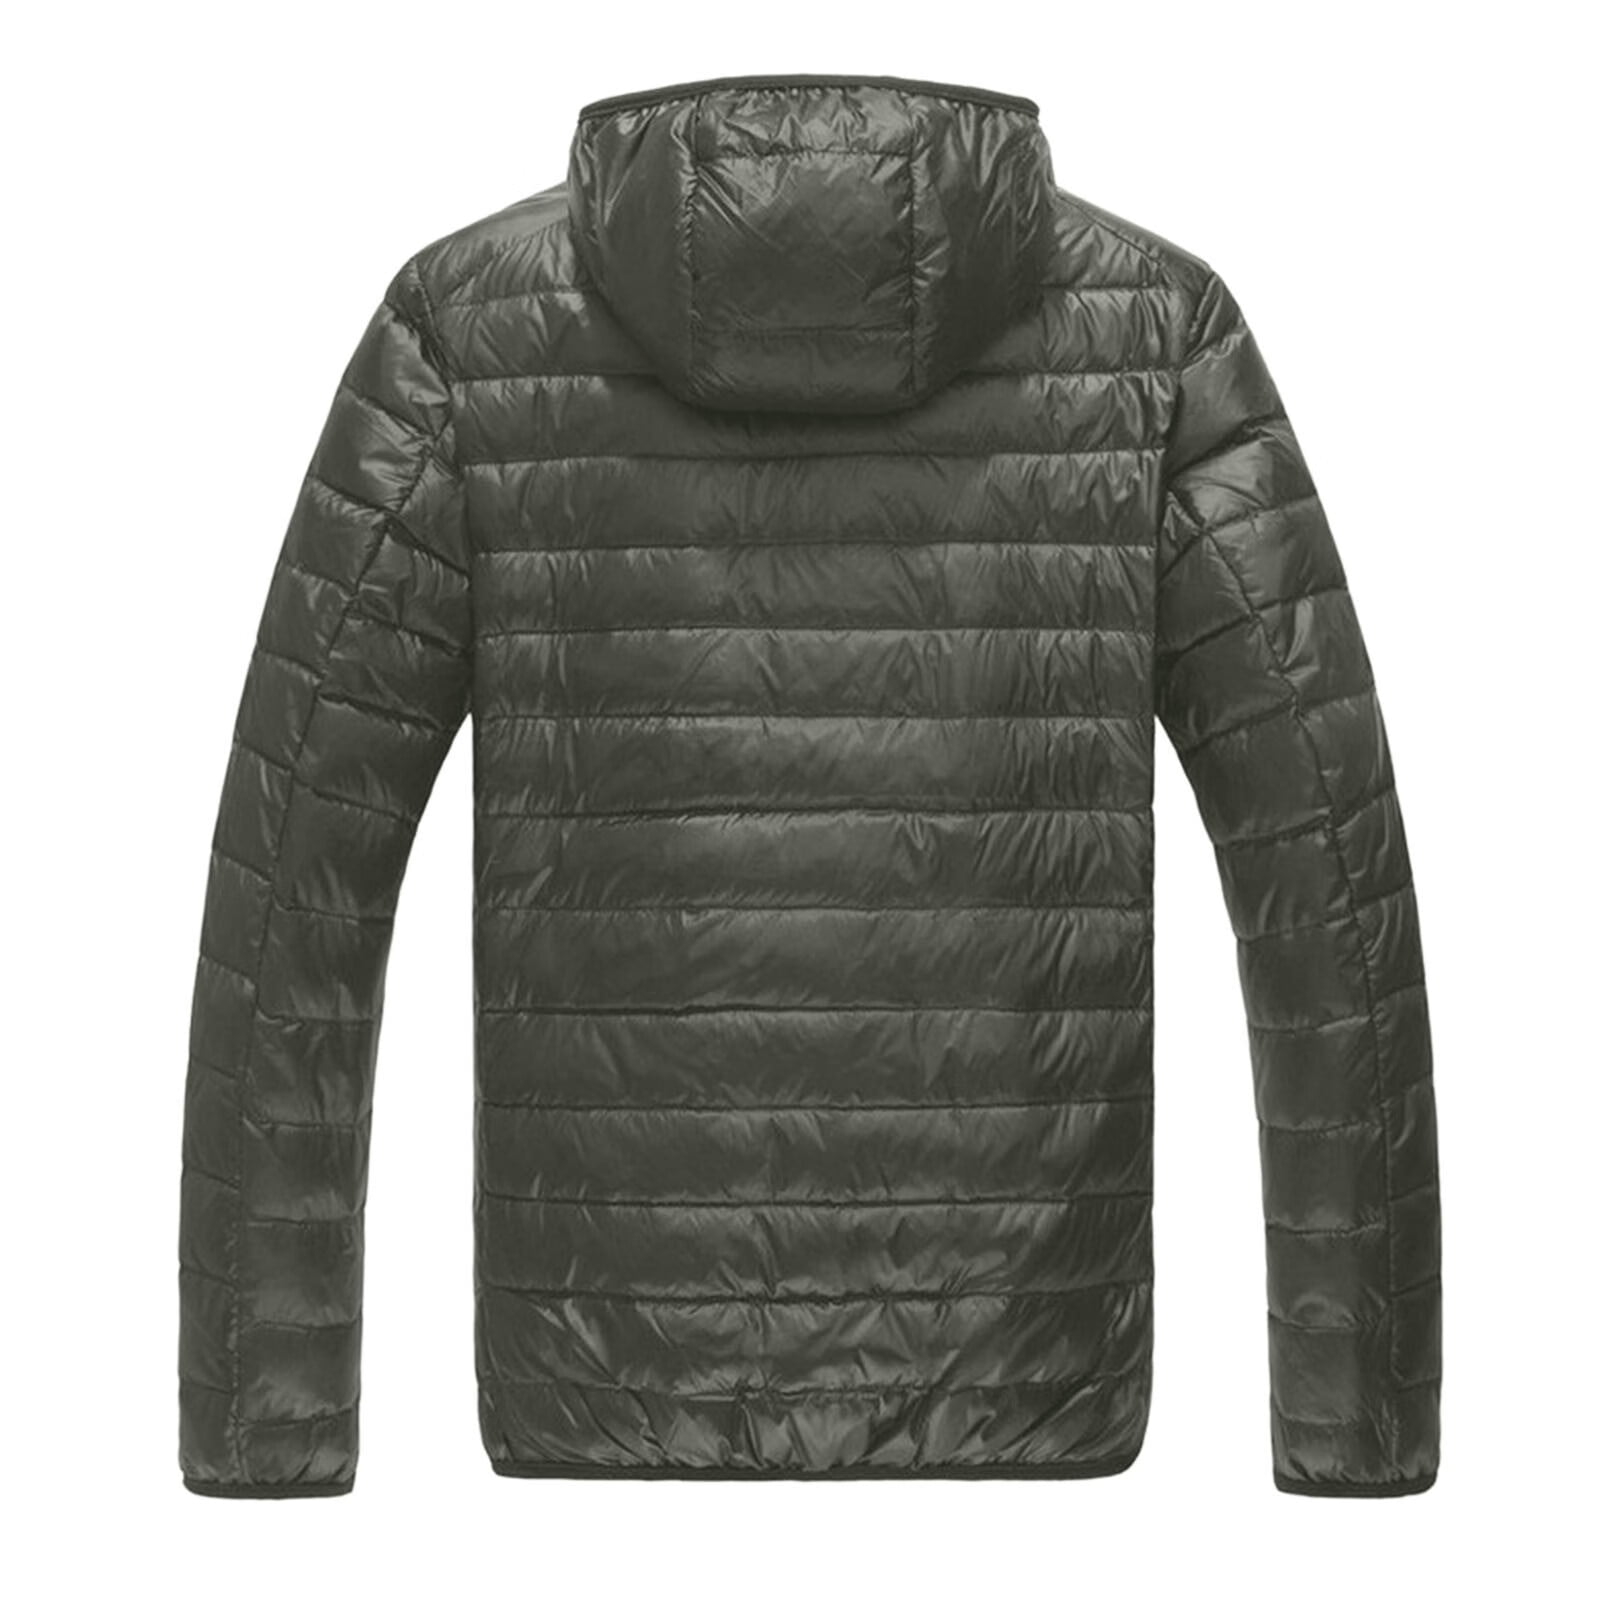 Men's Winter Solid Hooded Down Jacket Casual Lightweight Warm Outwear ...